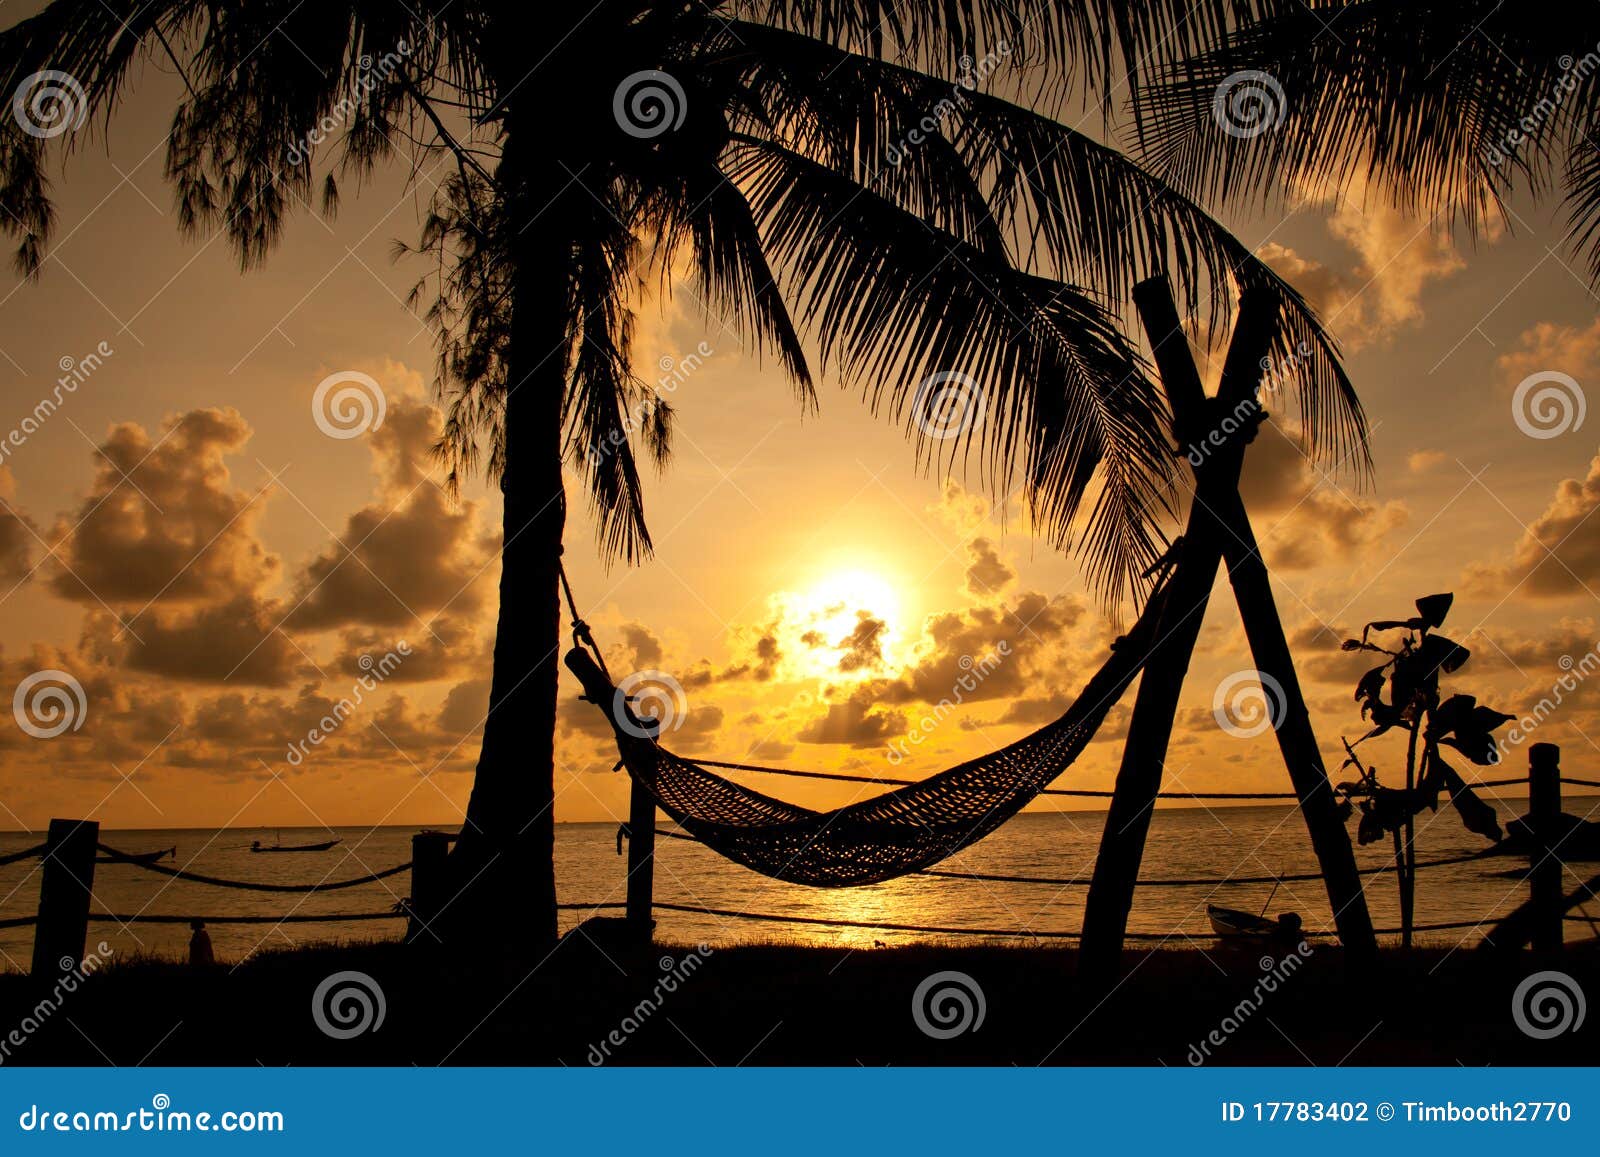 Silhouette d'hamac et de palmier contre un lever de soleil au-dessus d'une mer d'or.